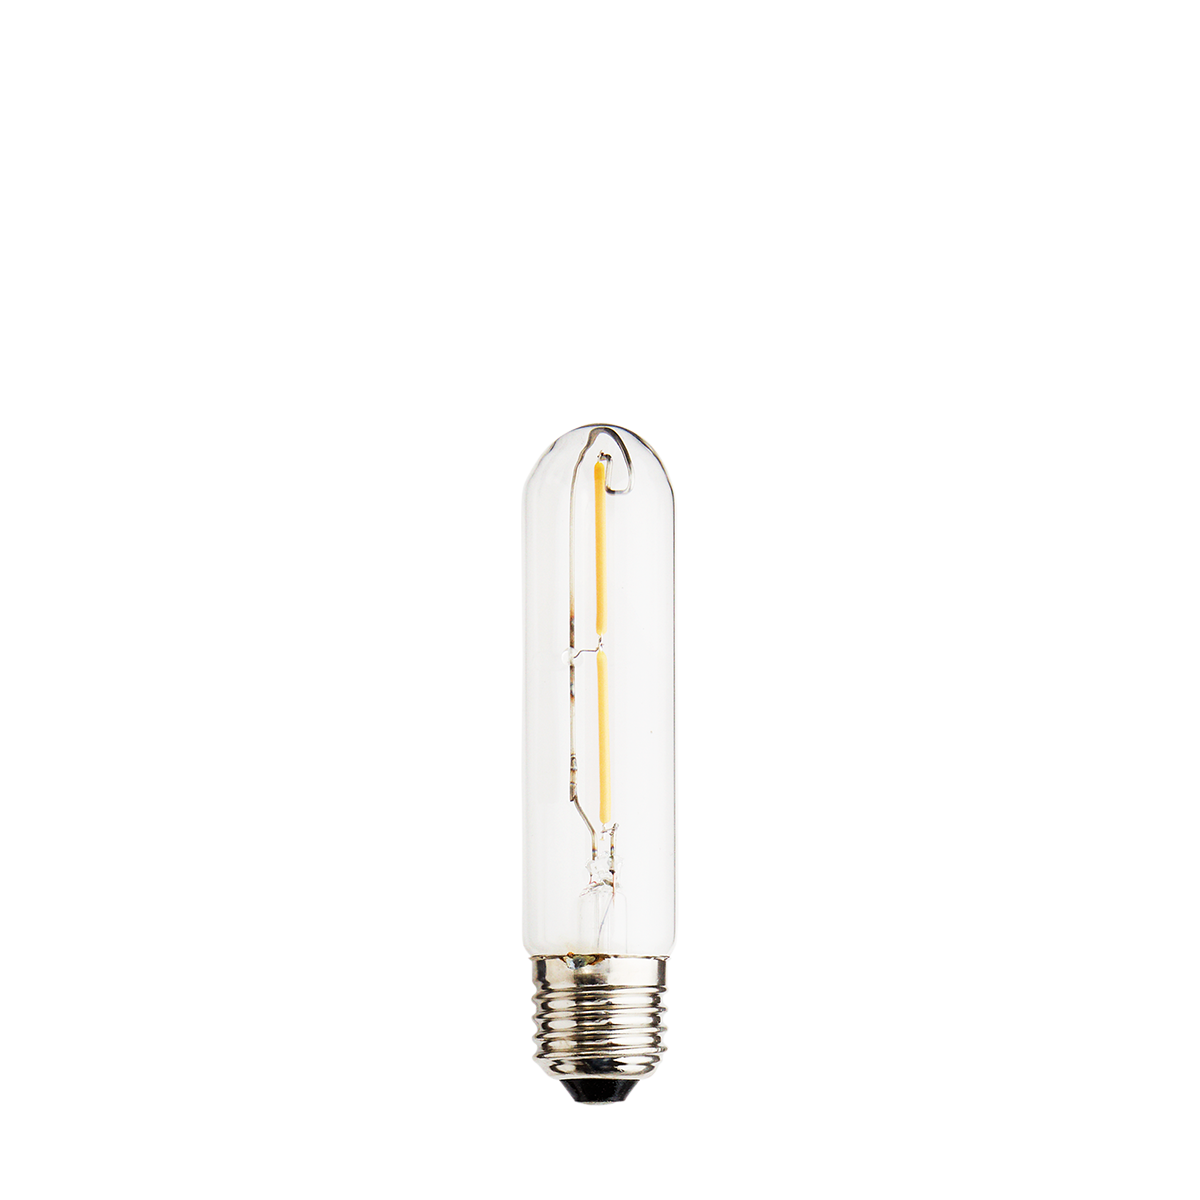 LED bulb, 2W, E27